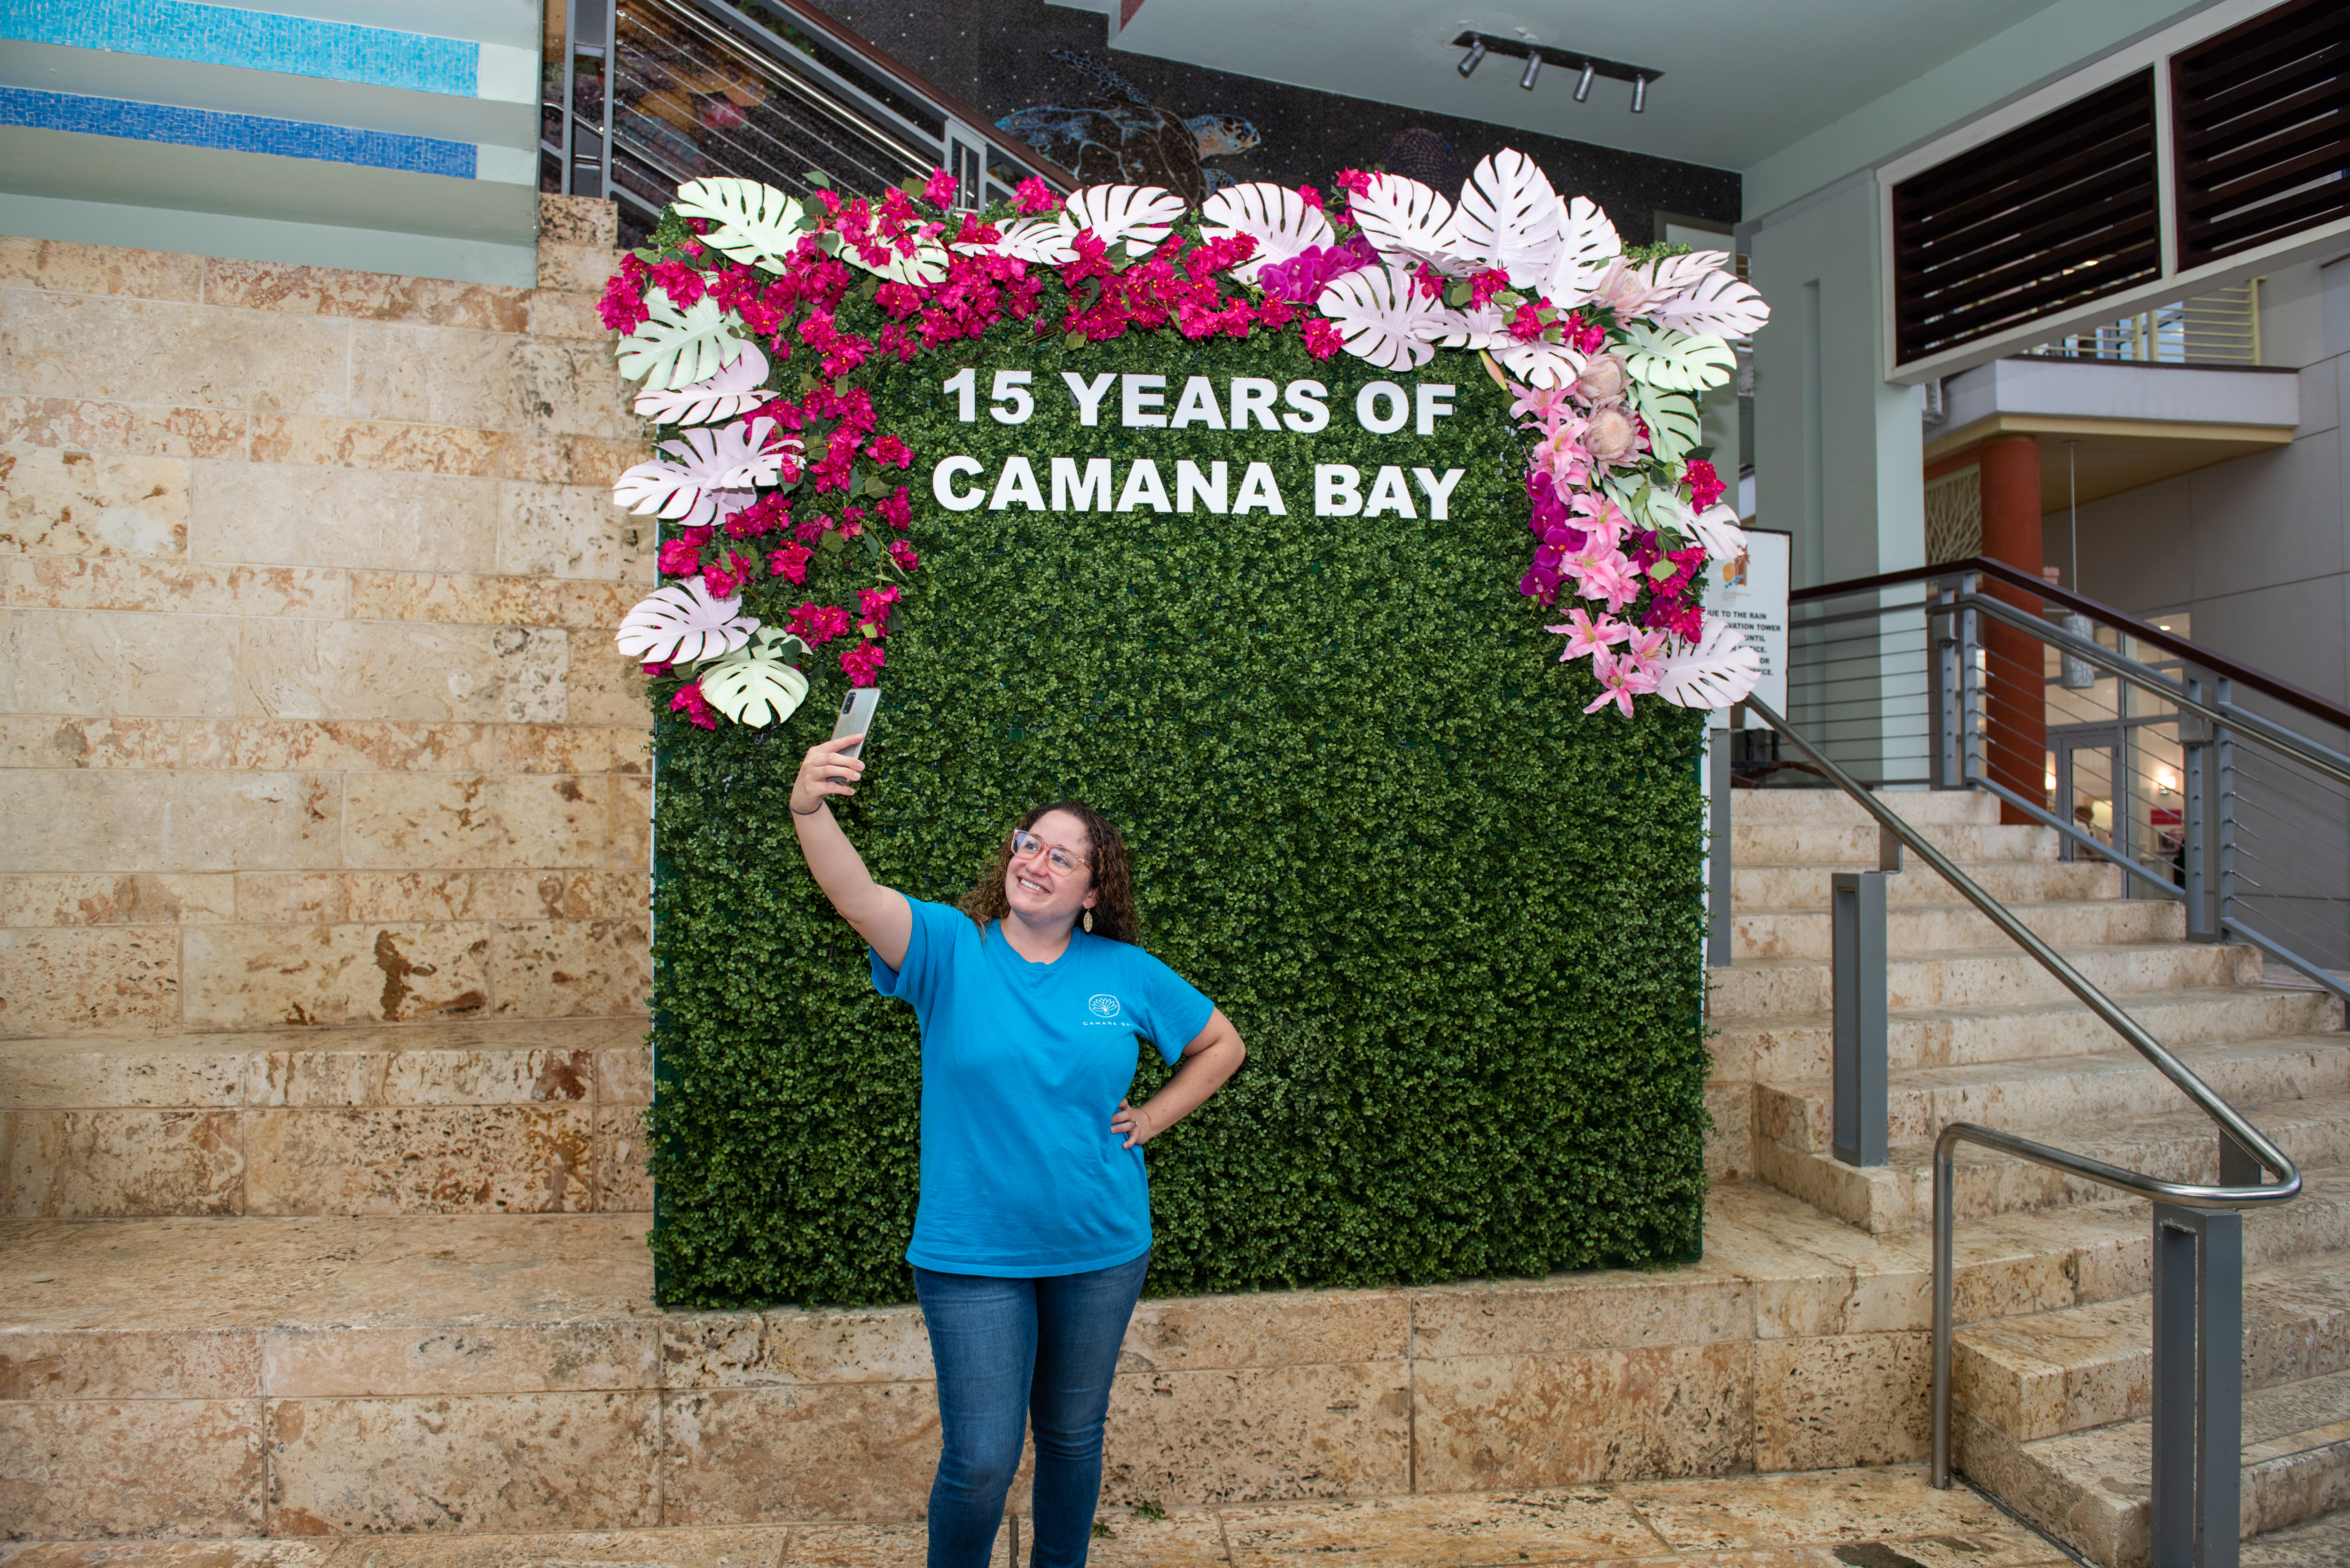 Camana Bay celebrates 15 years